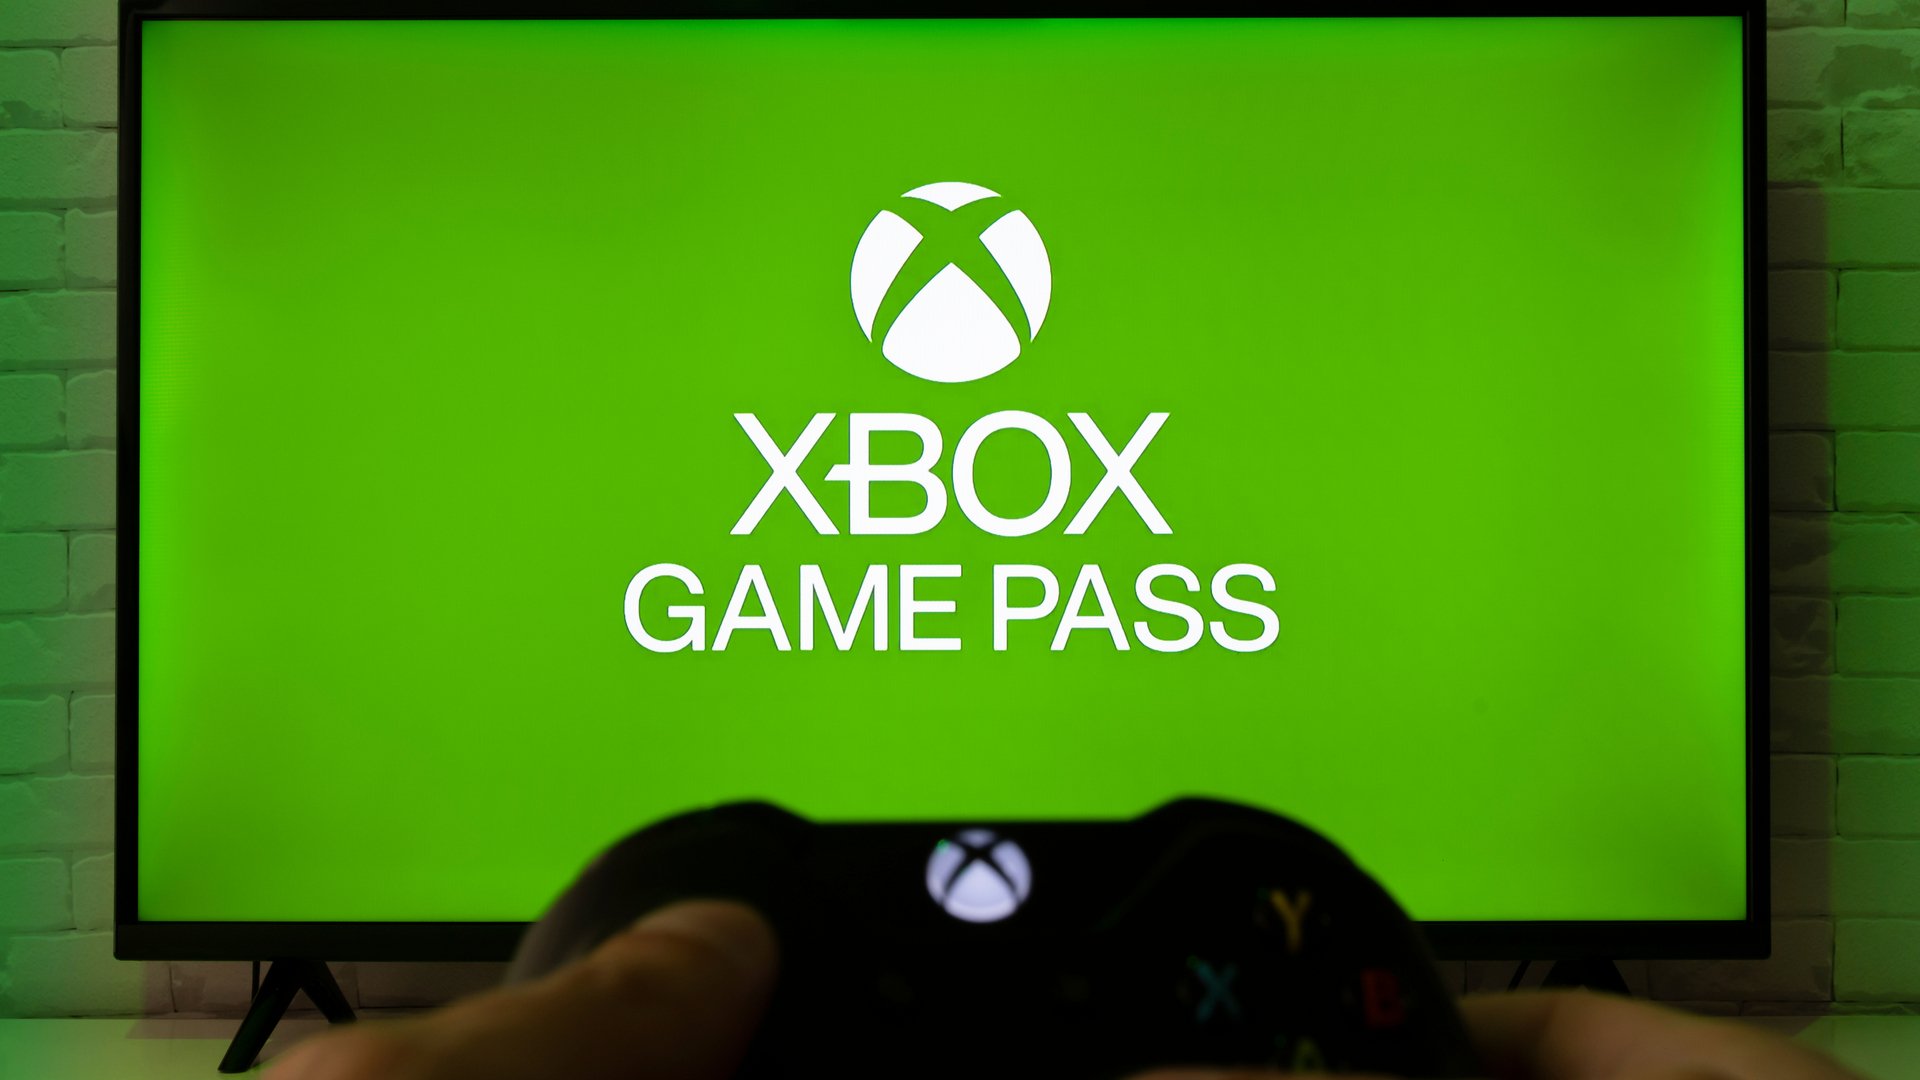 Xbox Game Pass-Startbildschirm mit einer Person, die einen Controller hält